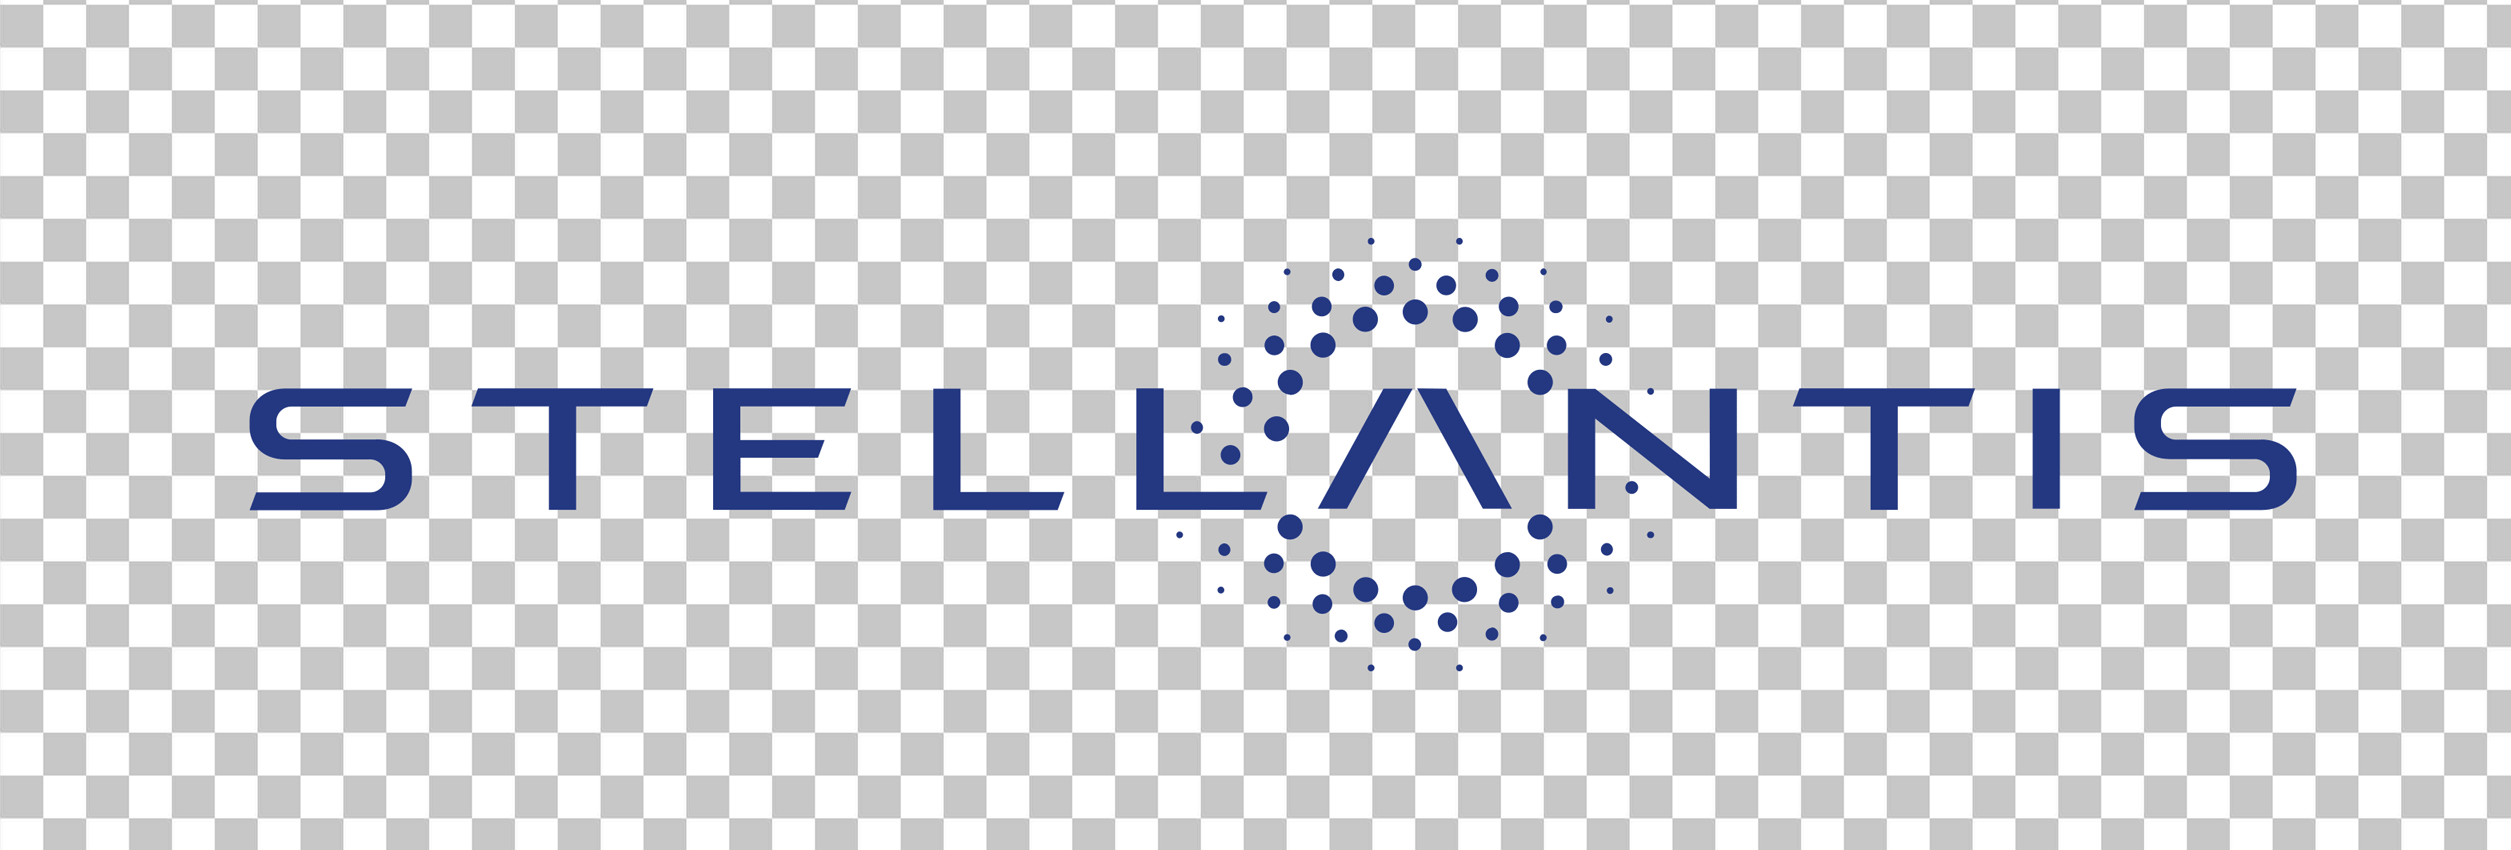 Stellantis Logo PNG Image